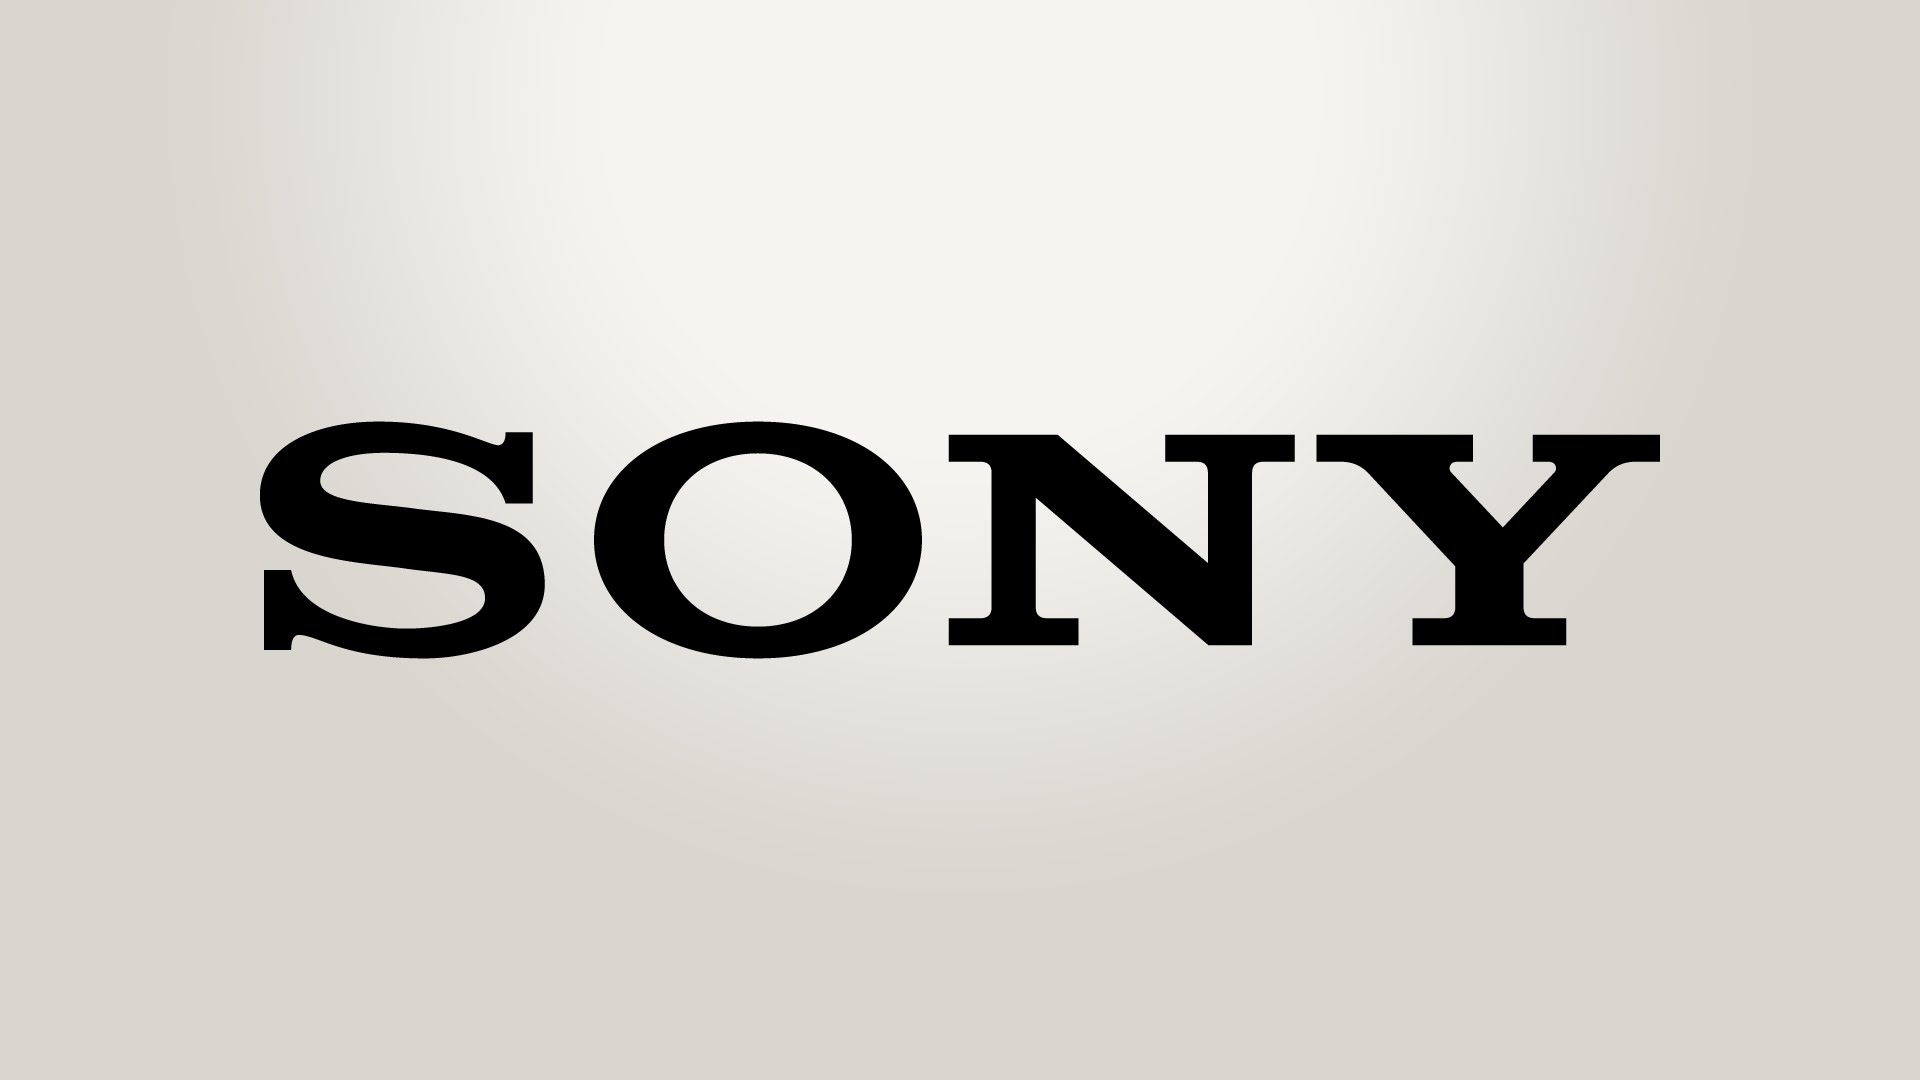 Sony Meluncurkan 4K HDR TV Master Series Dengan A9F OLED Sebagai Unggulan Untuk Kualitas Gambar Di Rumah